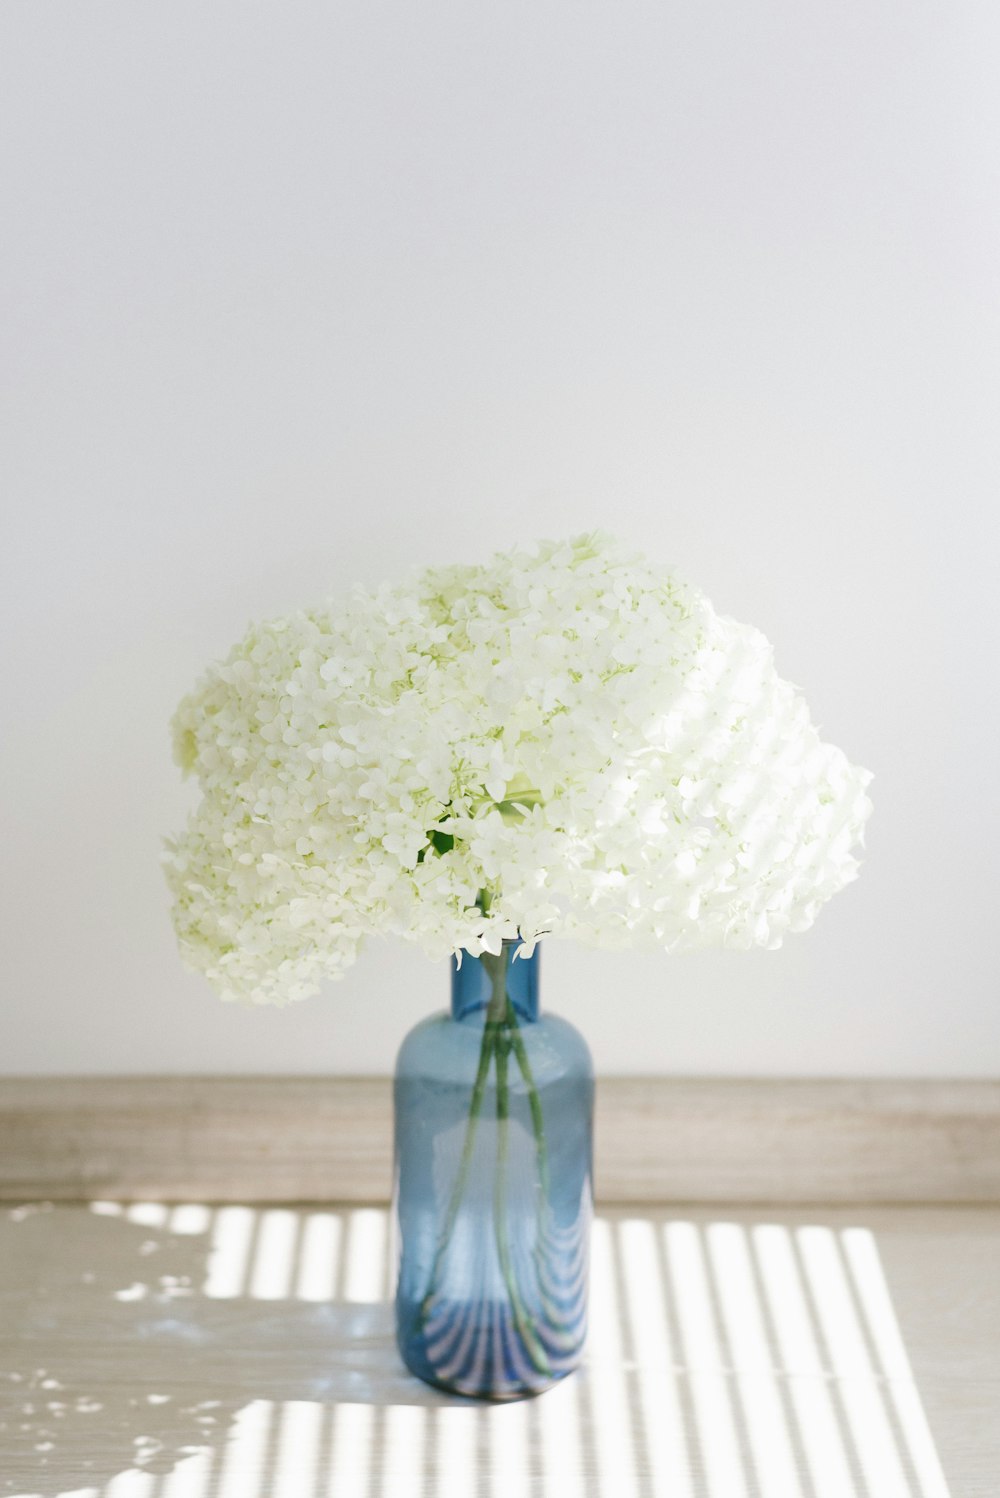 white flower on blue glass vase